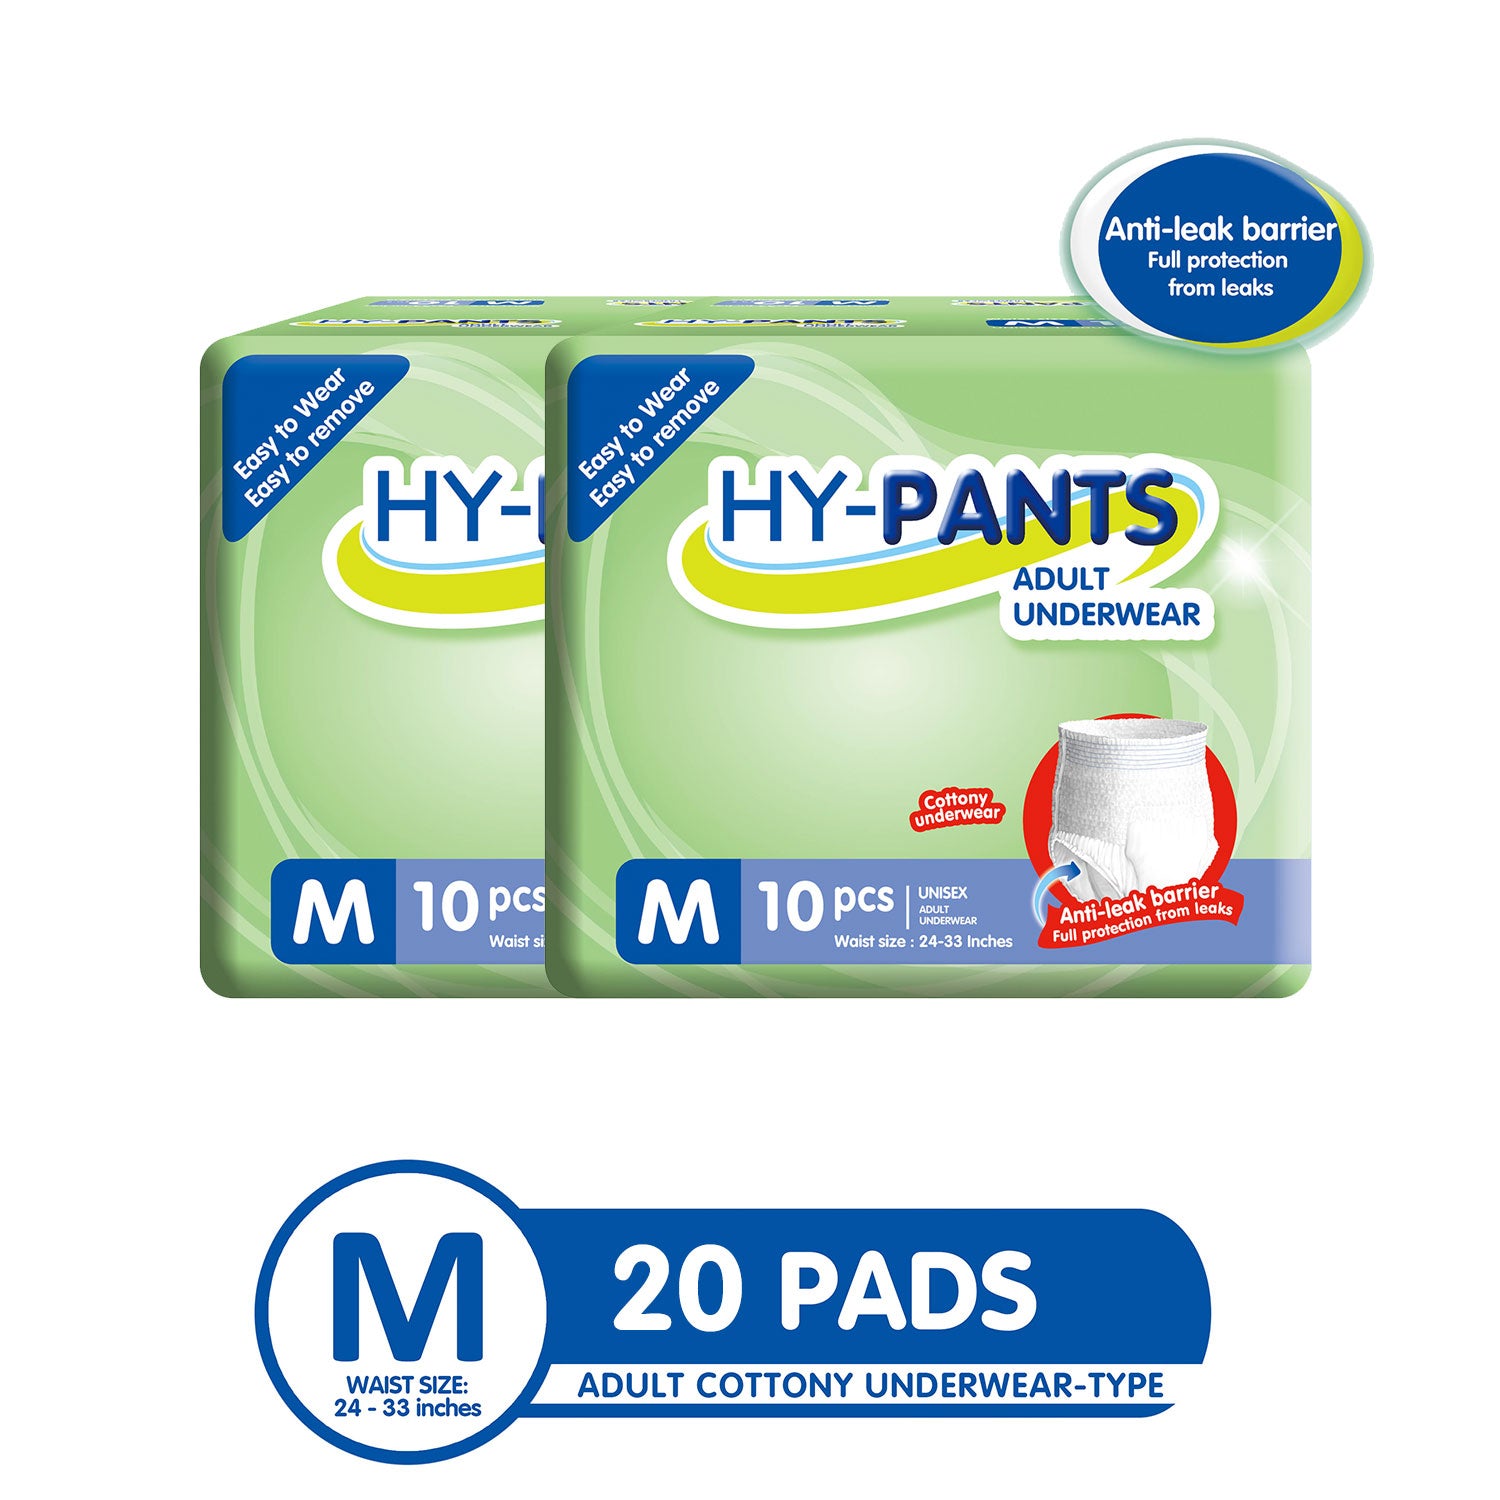 Hy-pants Adult Underwear Medium - 2 Packs (20 Pads)